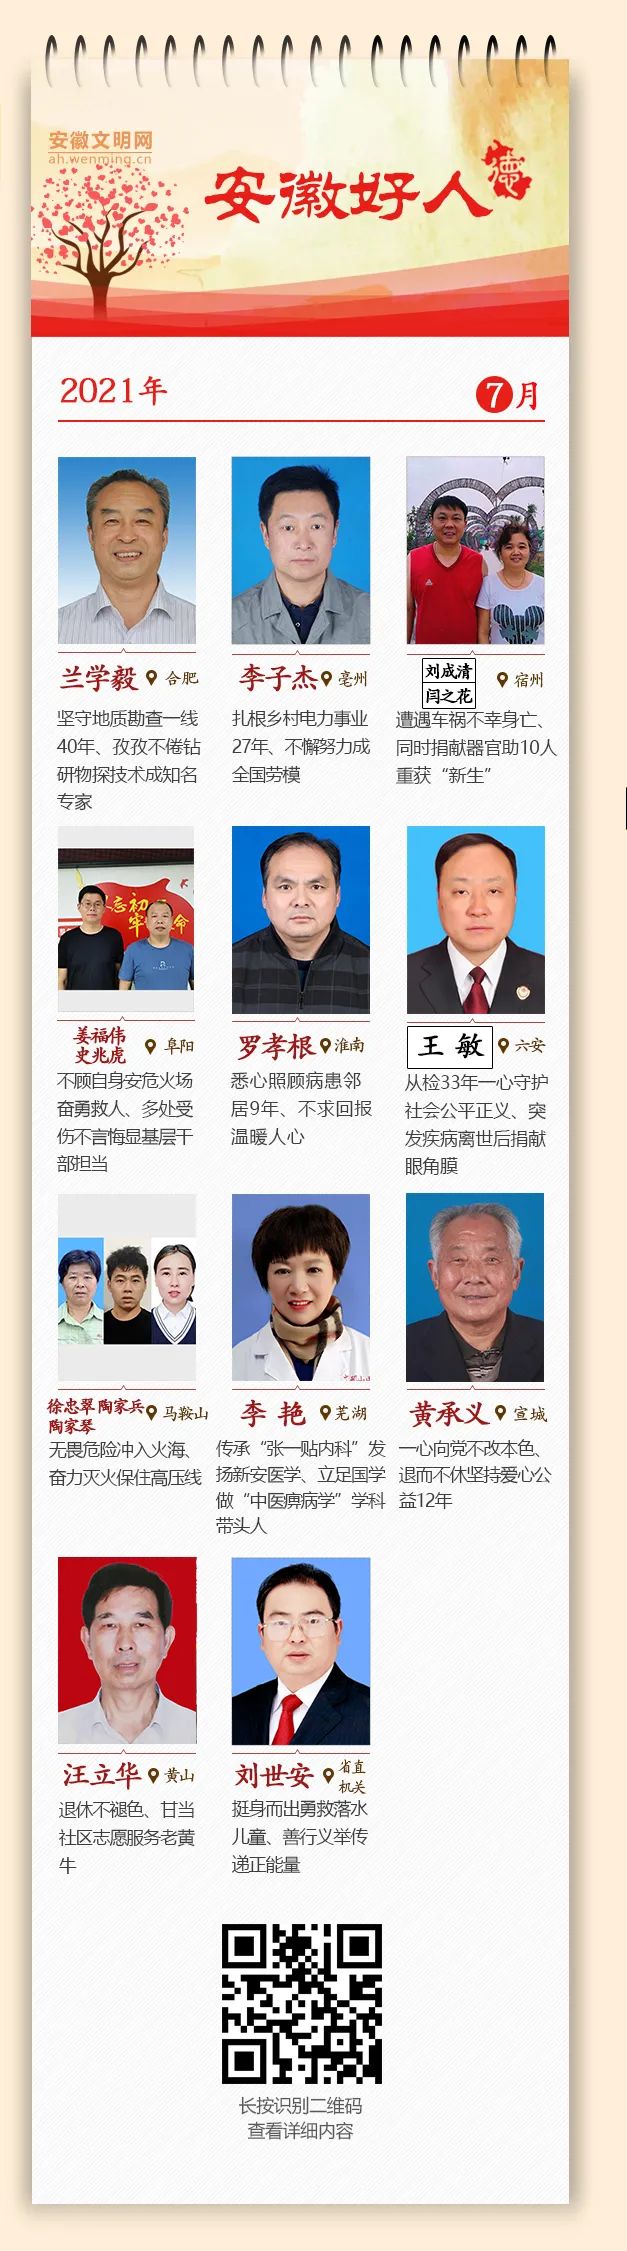 <第3556期>王敏同志当选2021年7月份“安徽好人”